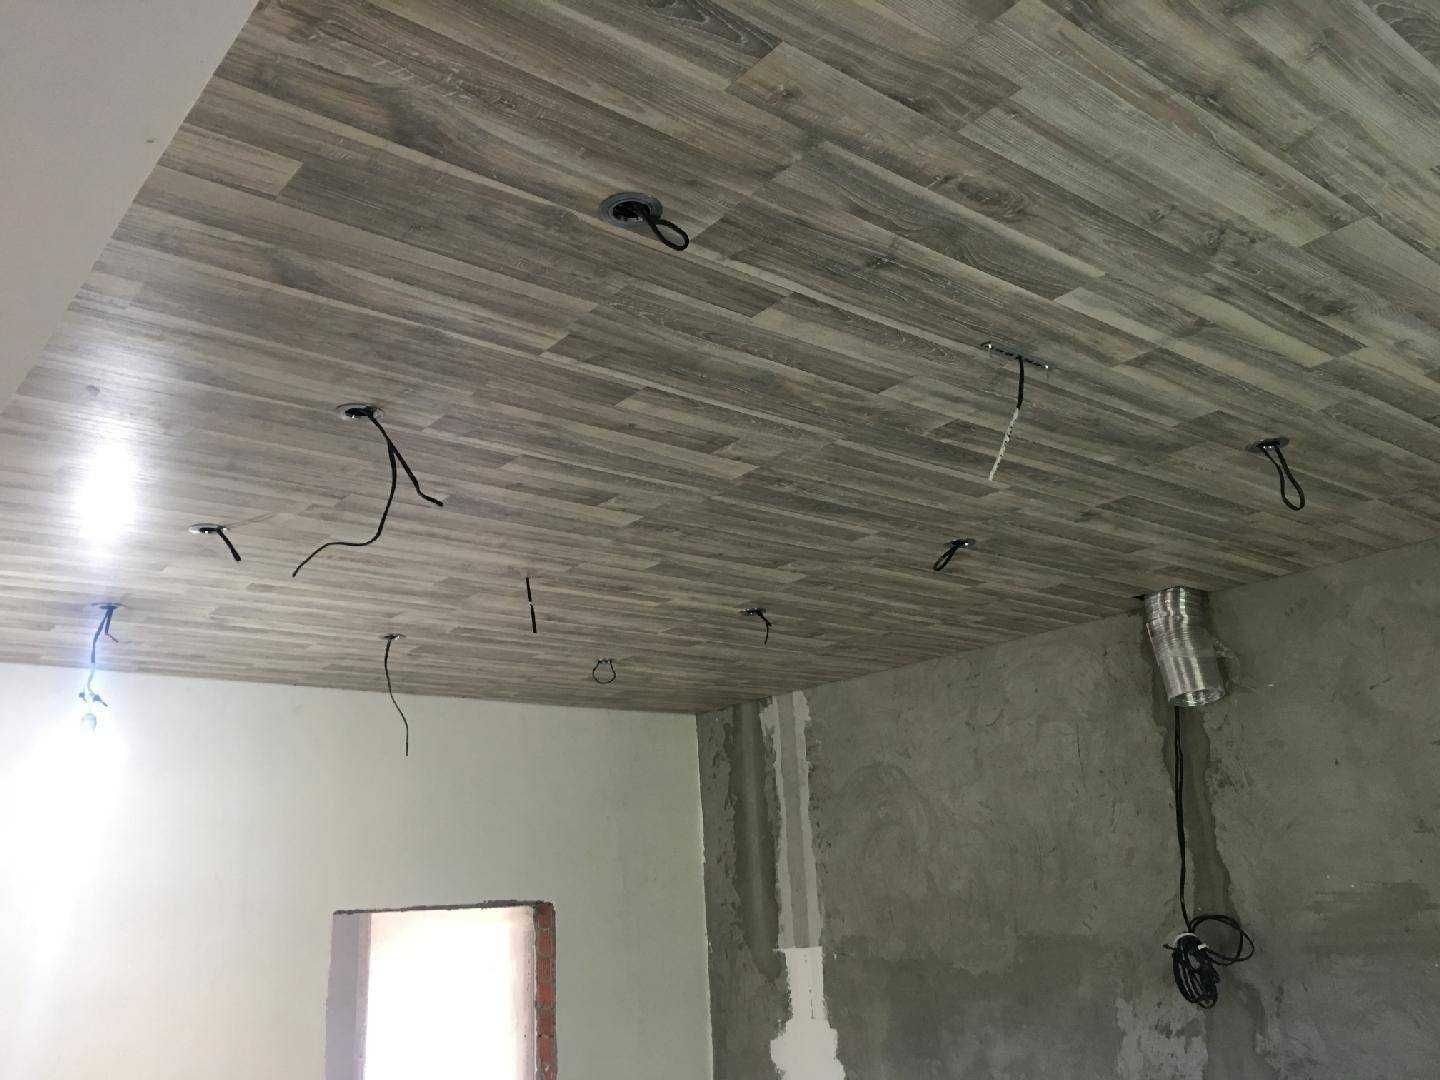 Как крепить ламинат на потолок на деревянный каркас или металлический каркас